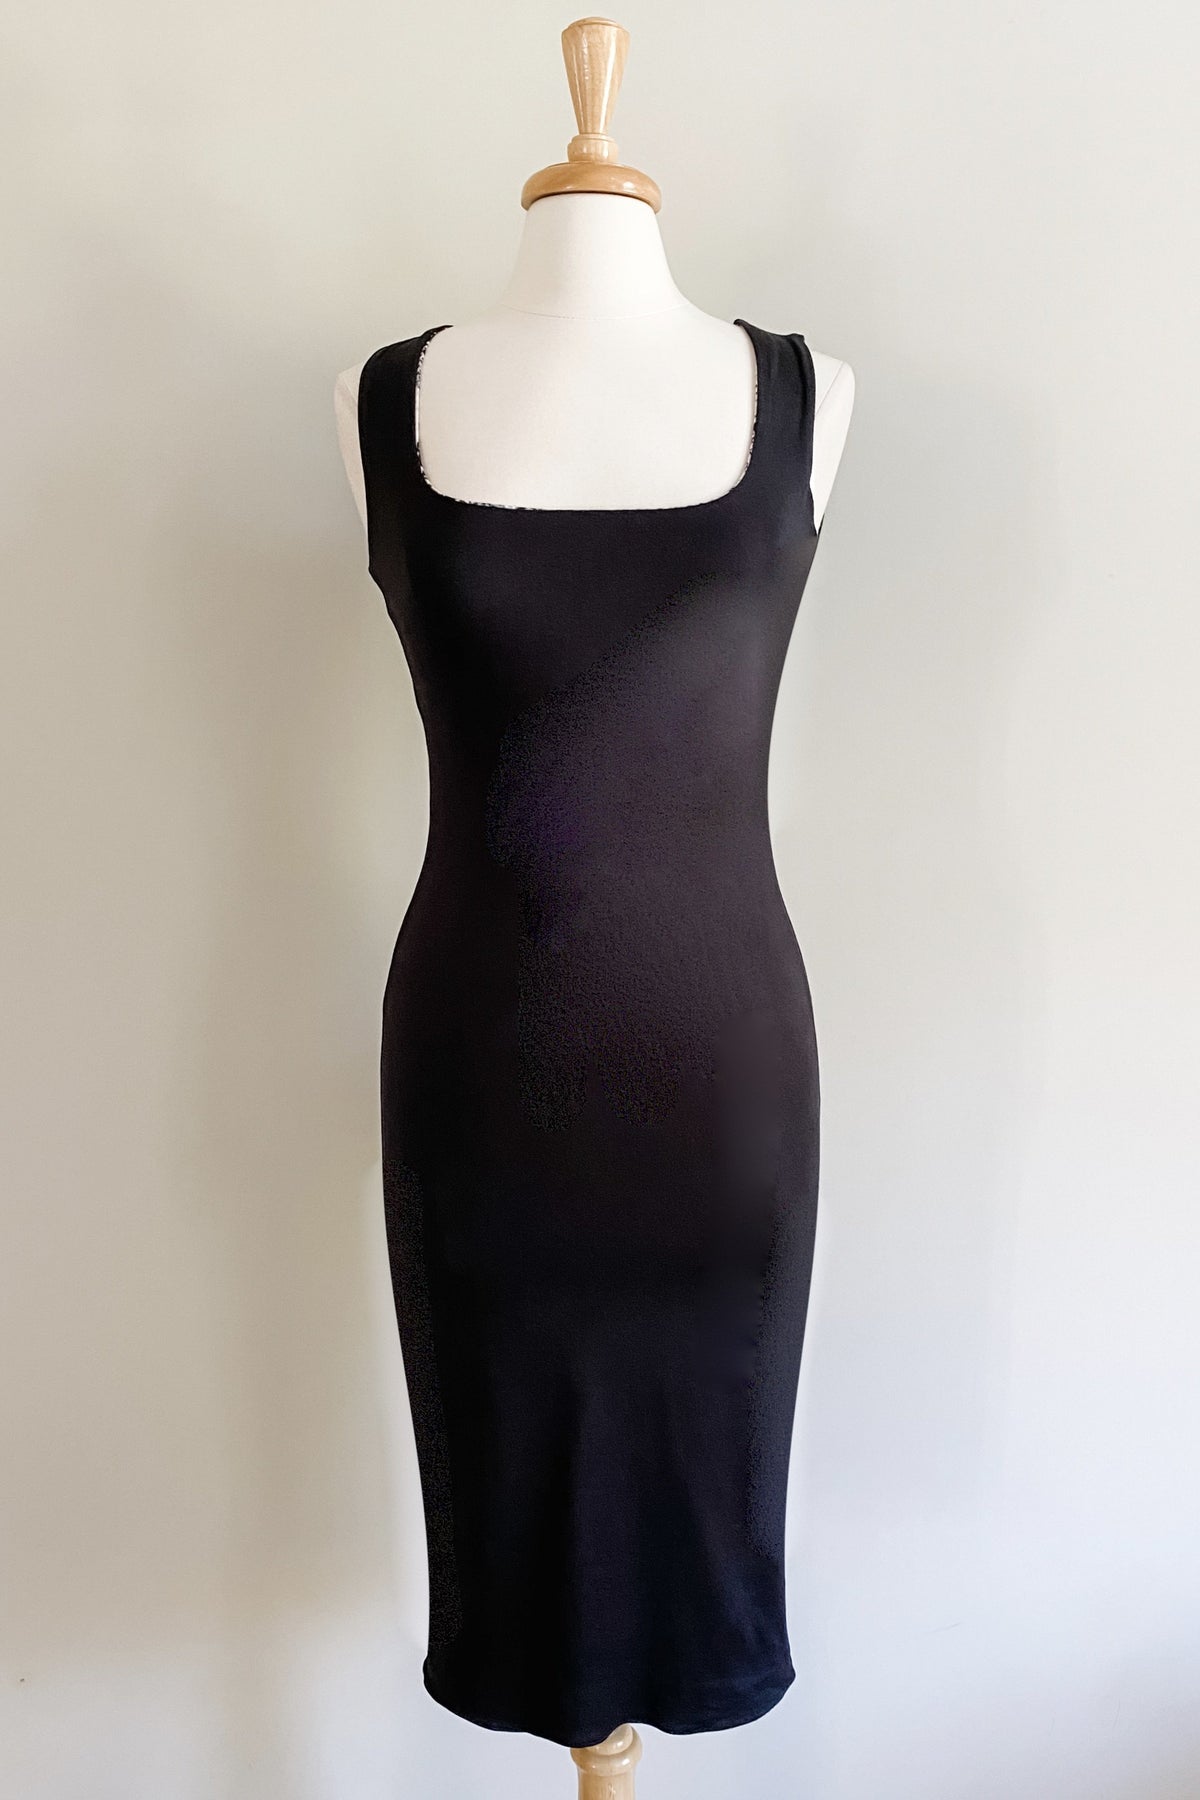 Diane Kroe Sheath Dress in Black Color